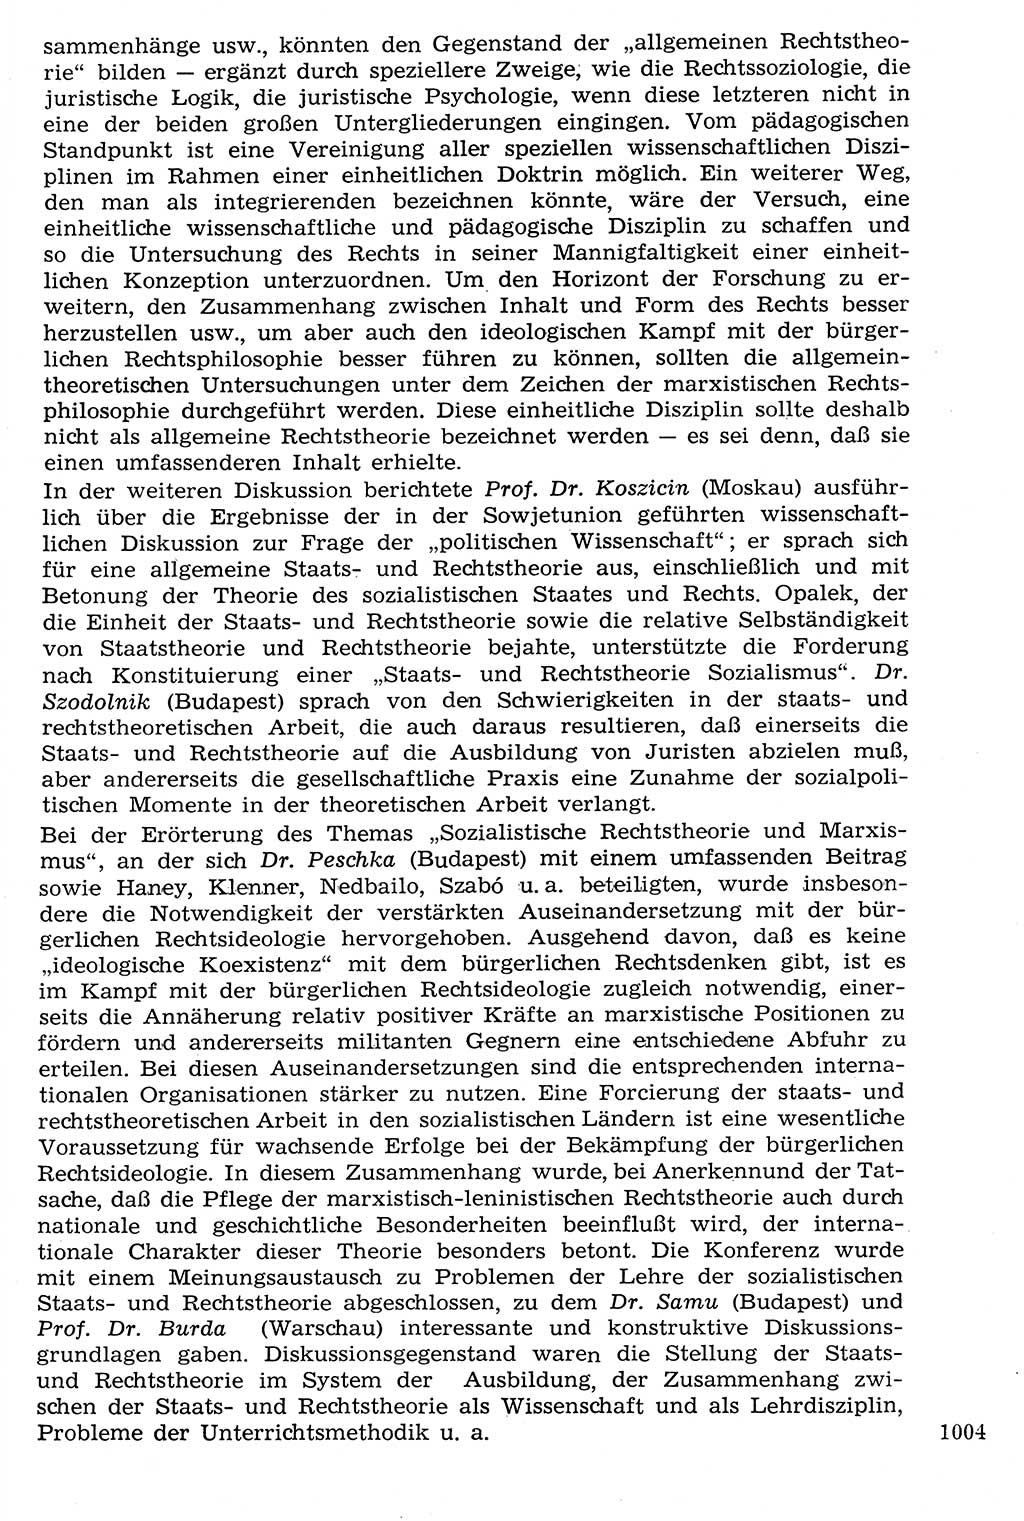 Staat und Recht (StuR), 17. Jahrgang [Deutsche Demokratische Republik (DDR)] 1968, Seite 1004 (StuR DDR 1968, S. 1004)